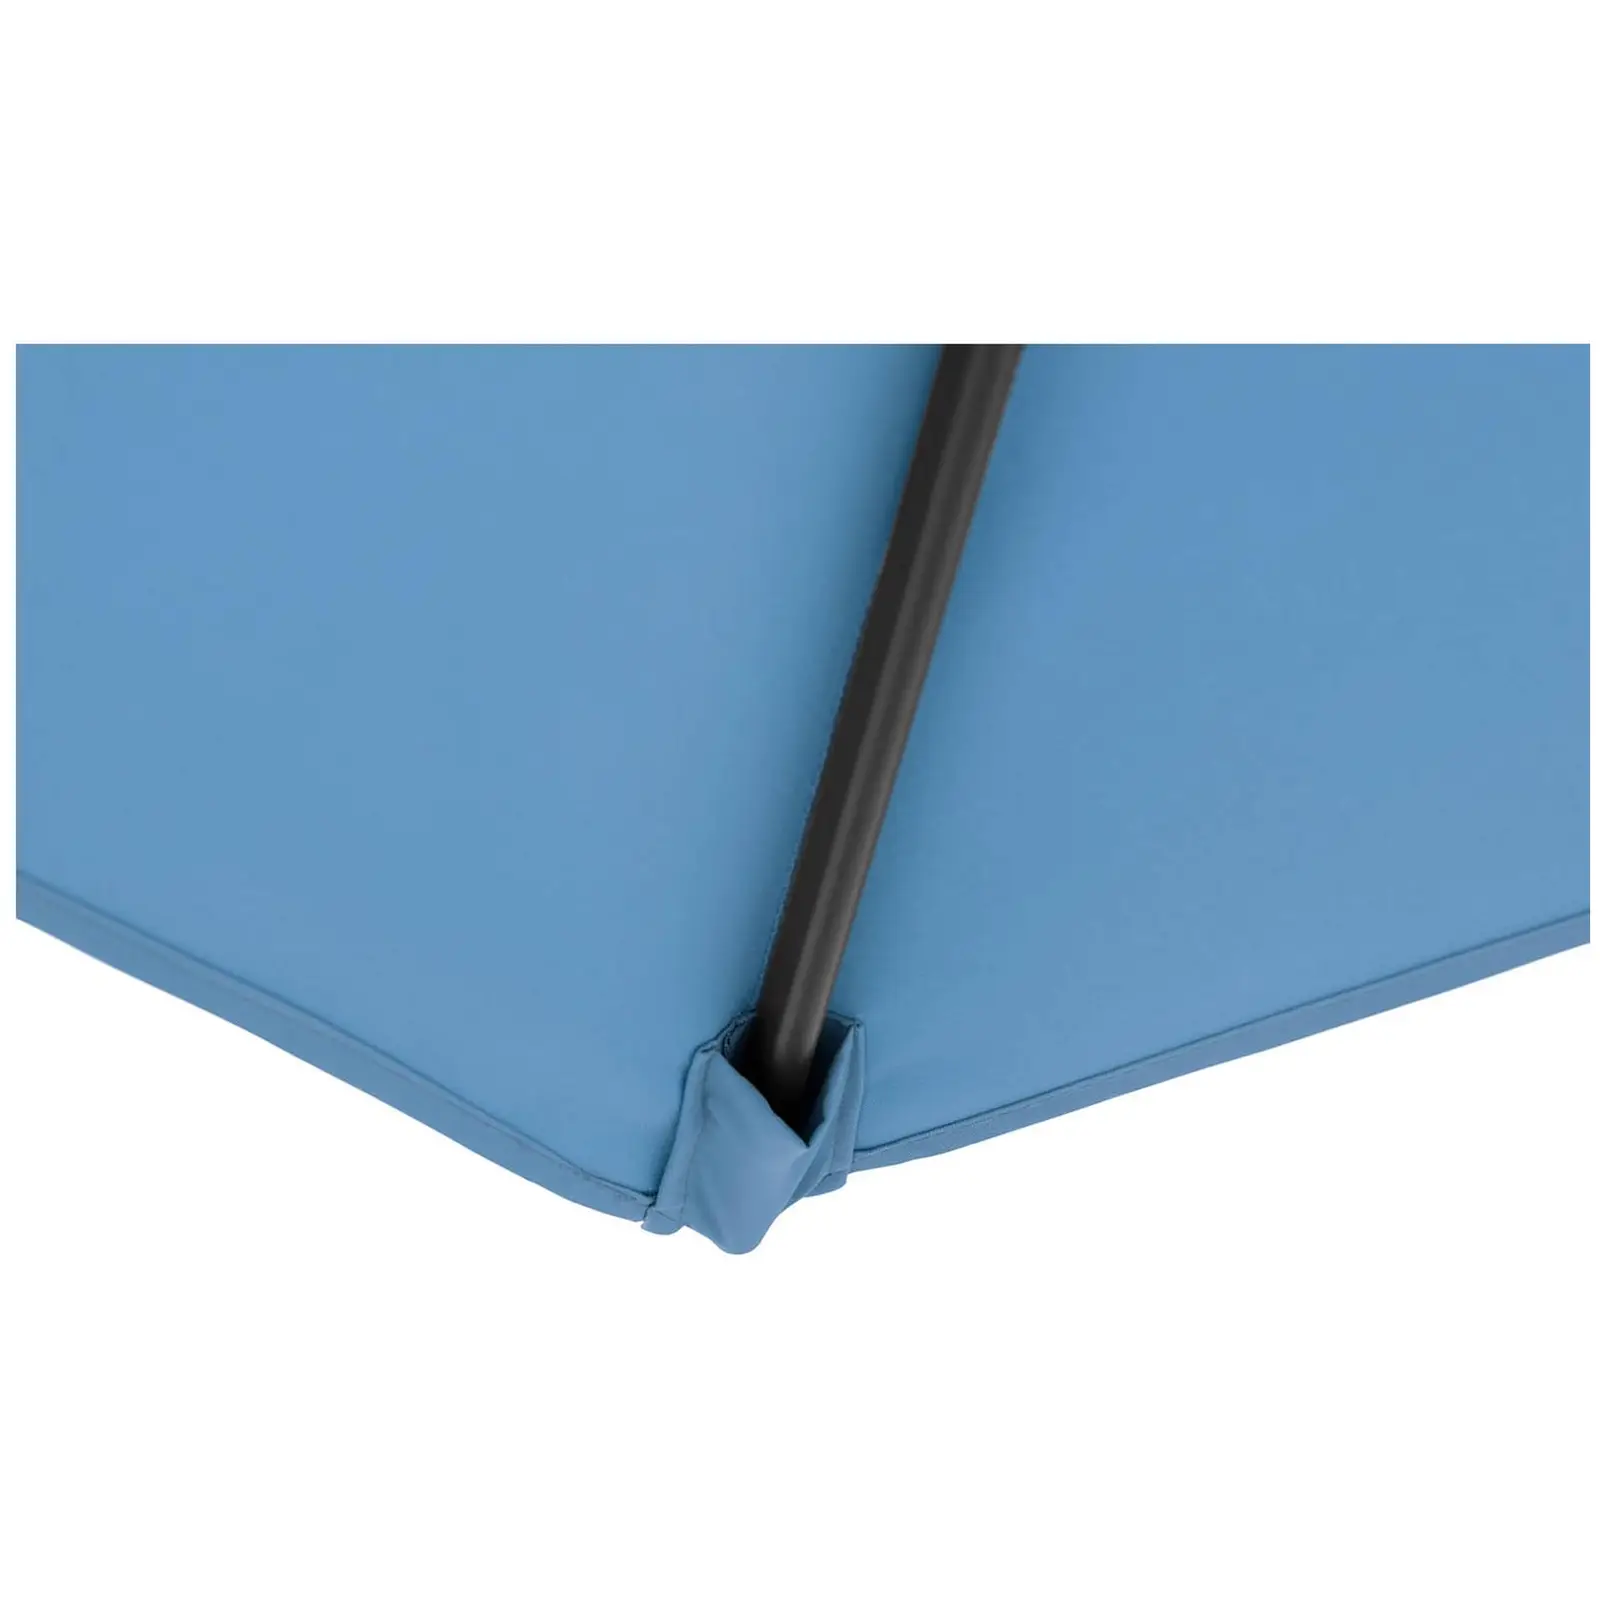 Andrahandssortering Parasoll - stort - blått - rektangulär - 200 x 300 cm